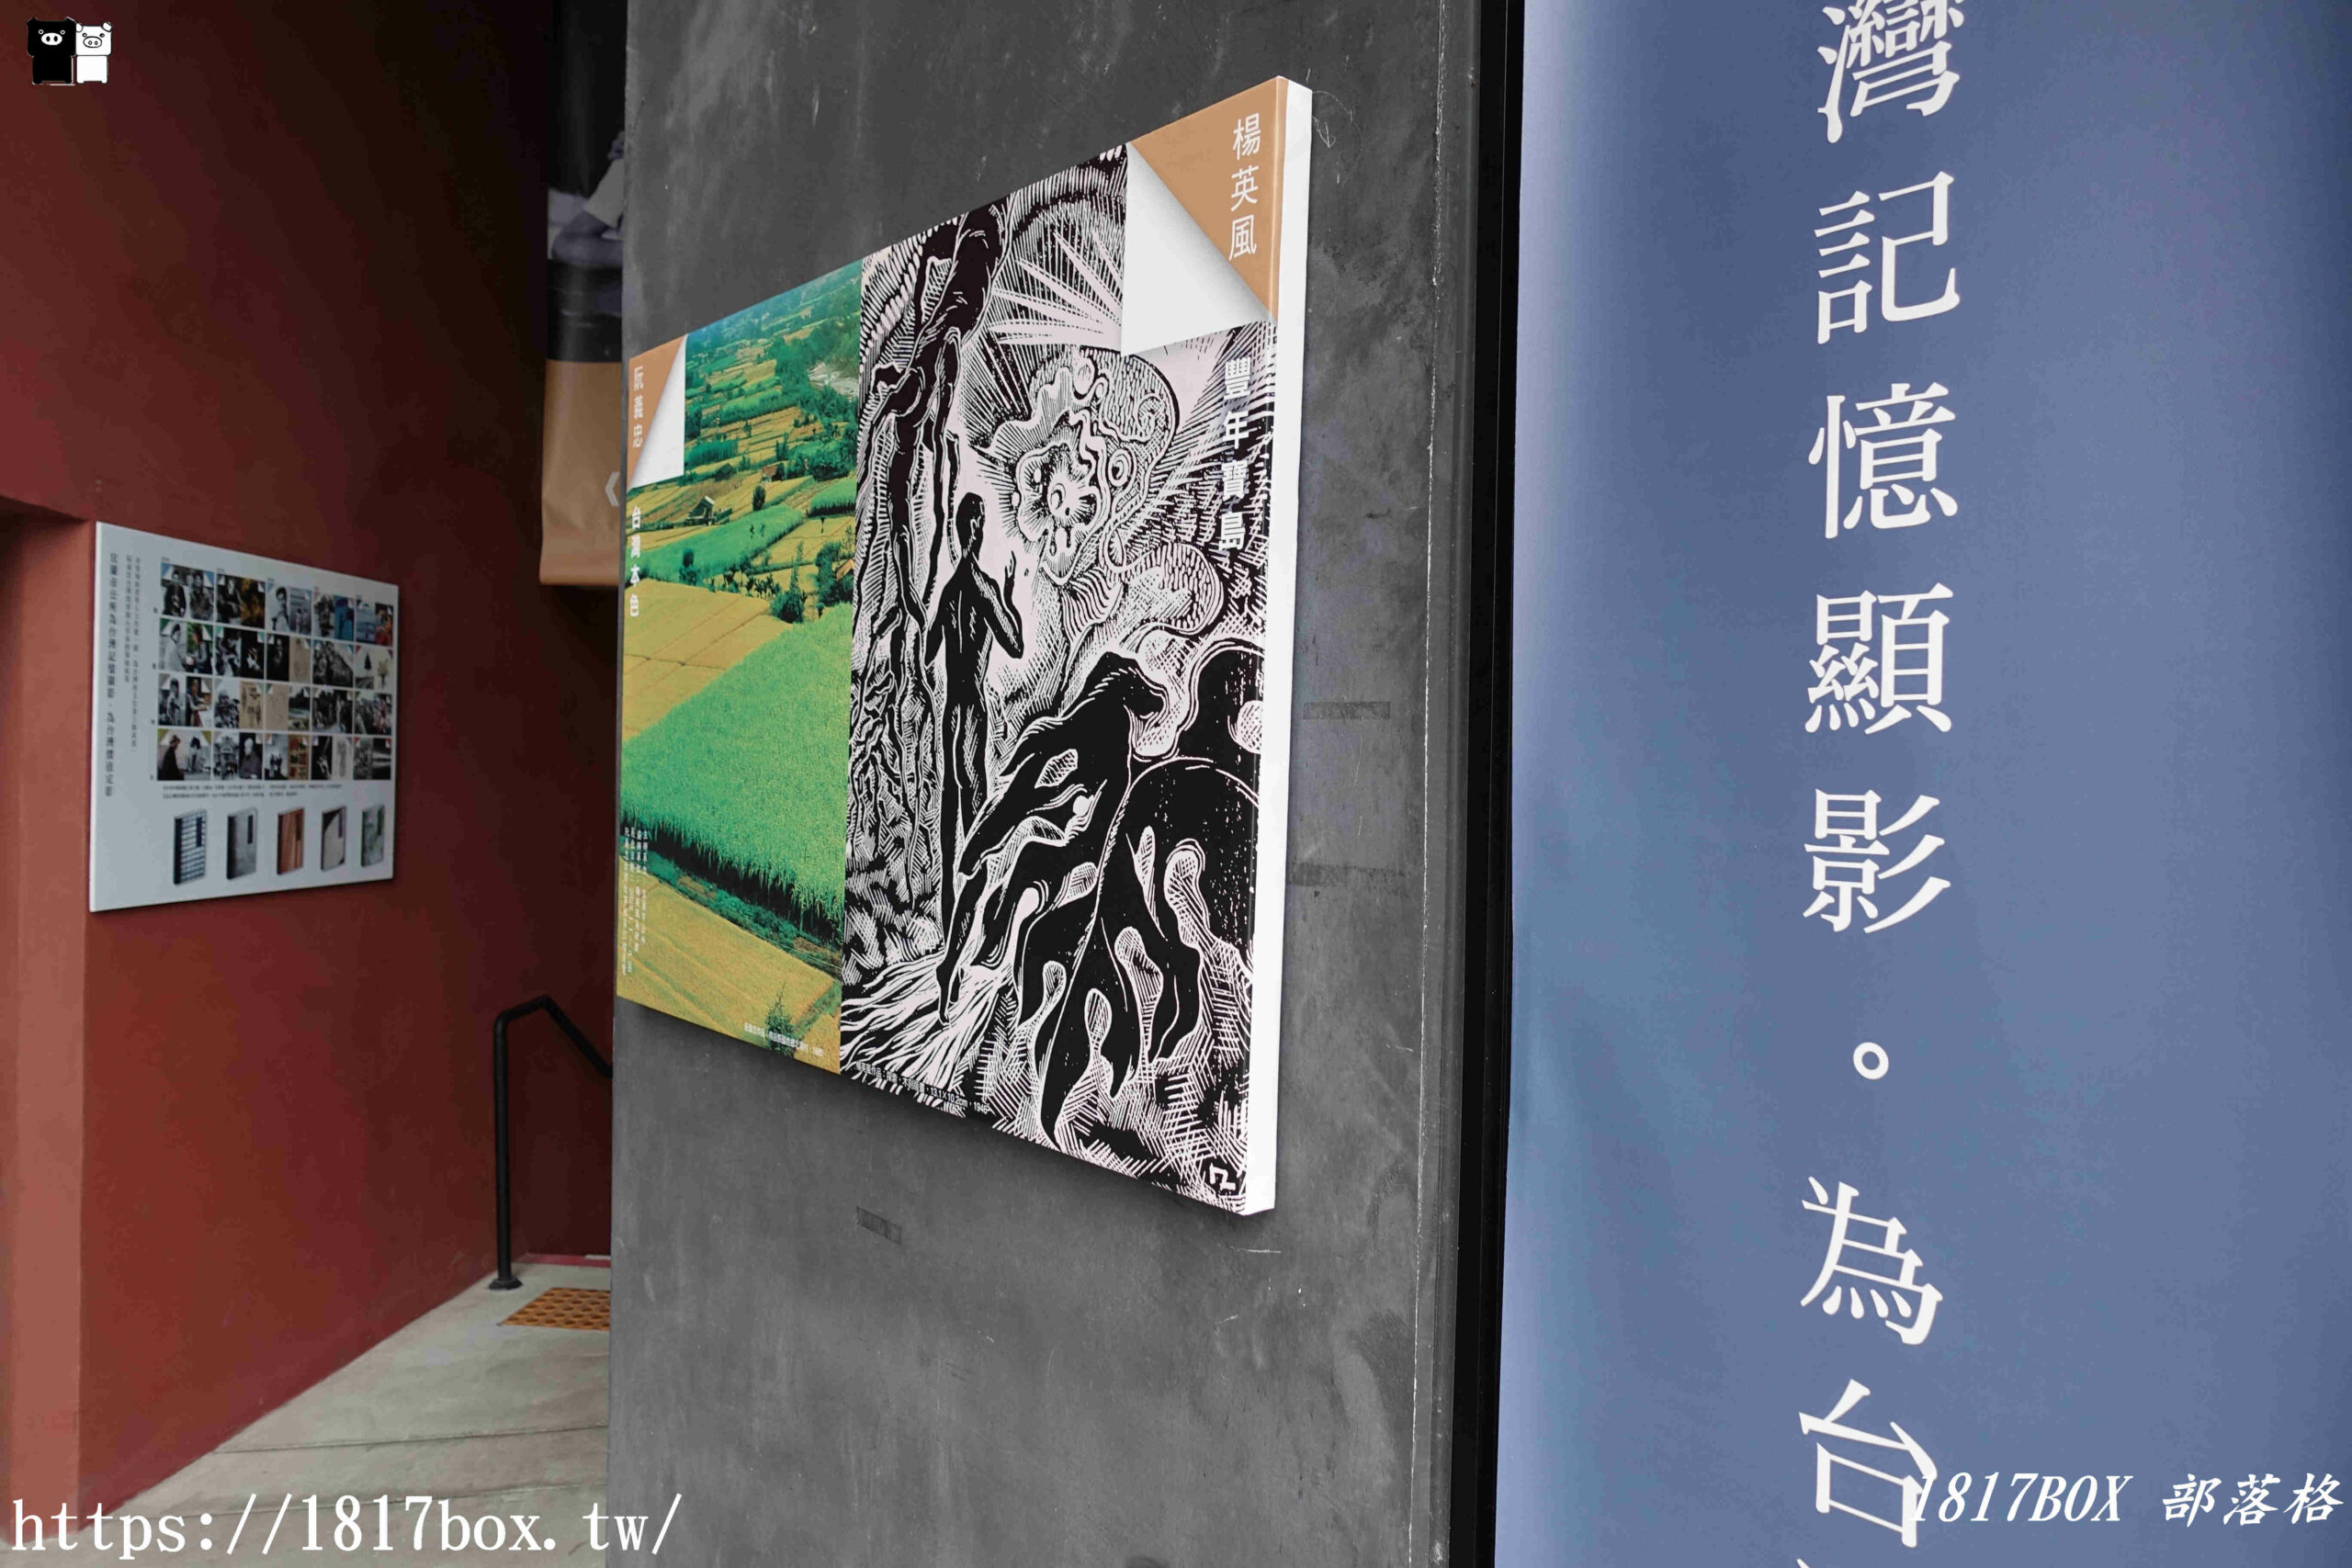 【宜蘭市】阮義忠台灣故事館。用照片說故事。讓故事傳真情 @1817BOX部落格